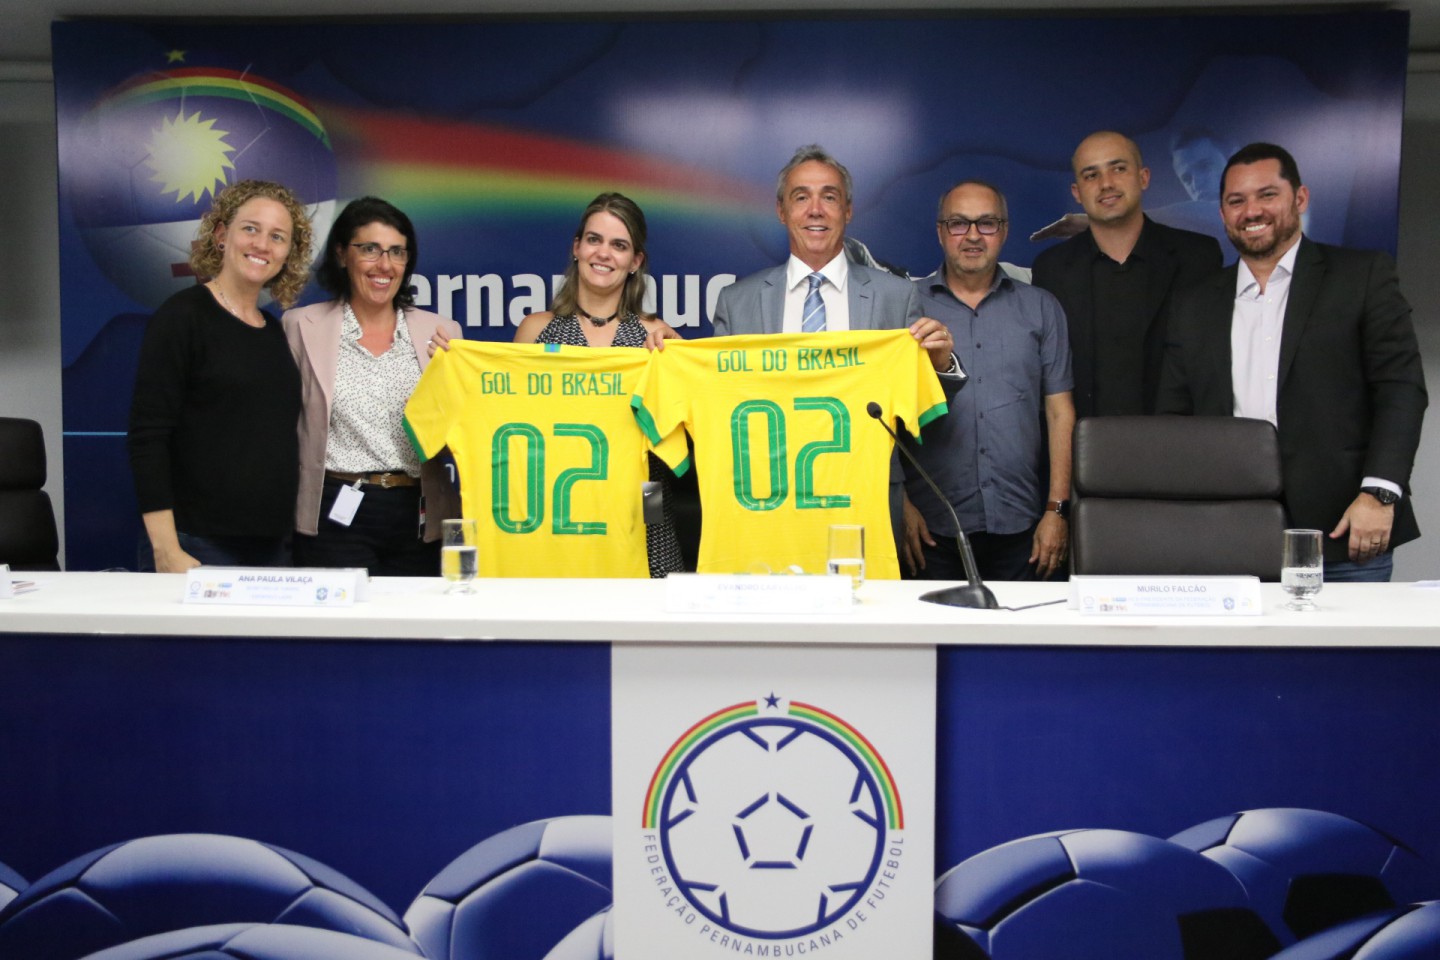 Projeto Gol do Brasil desembarca na cidade de Recife - CenárioMT